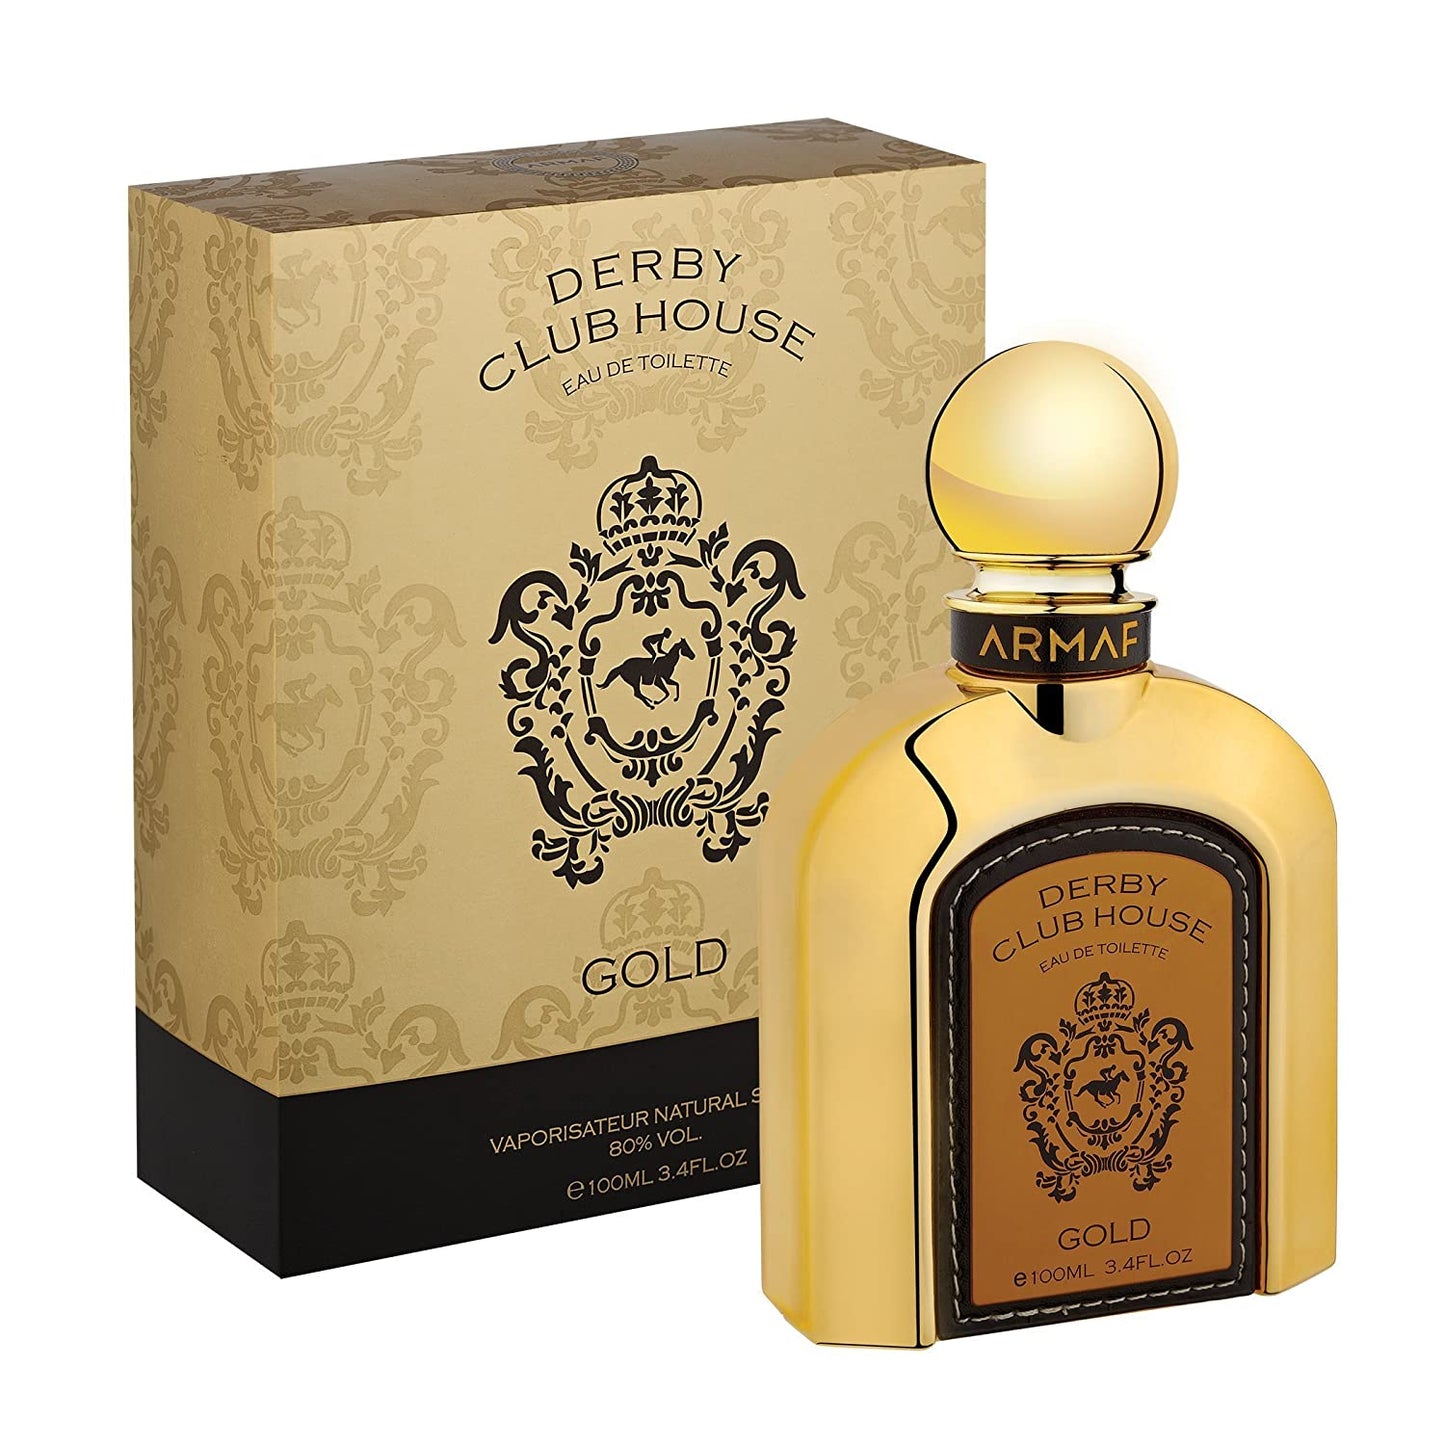 Armaf Derby Club House Gold by Armaf Men 3.4 oz Eau de Parfum Spray | FragranceBaba.com